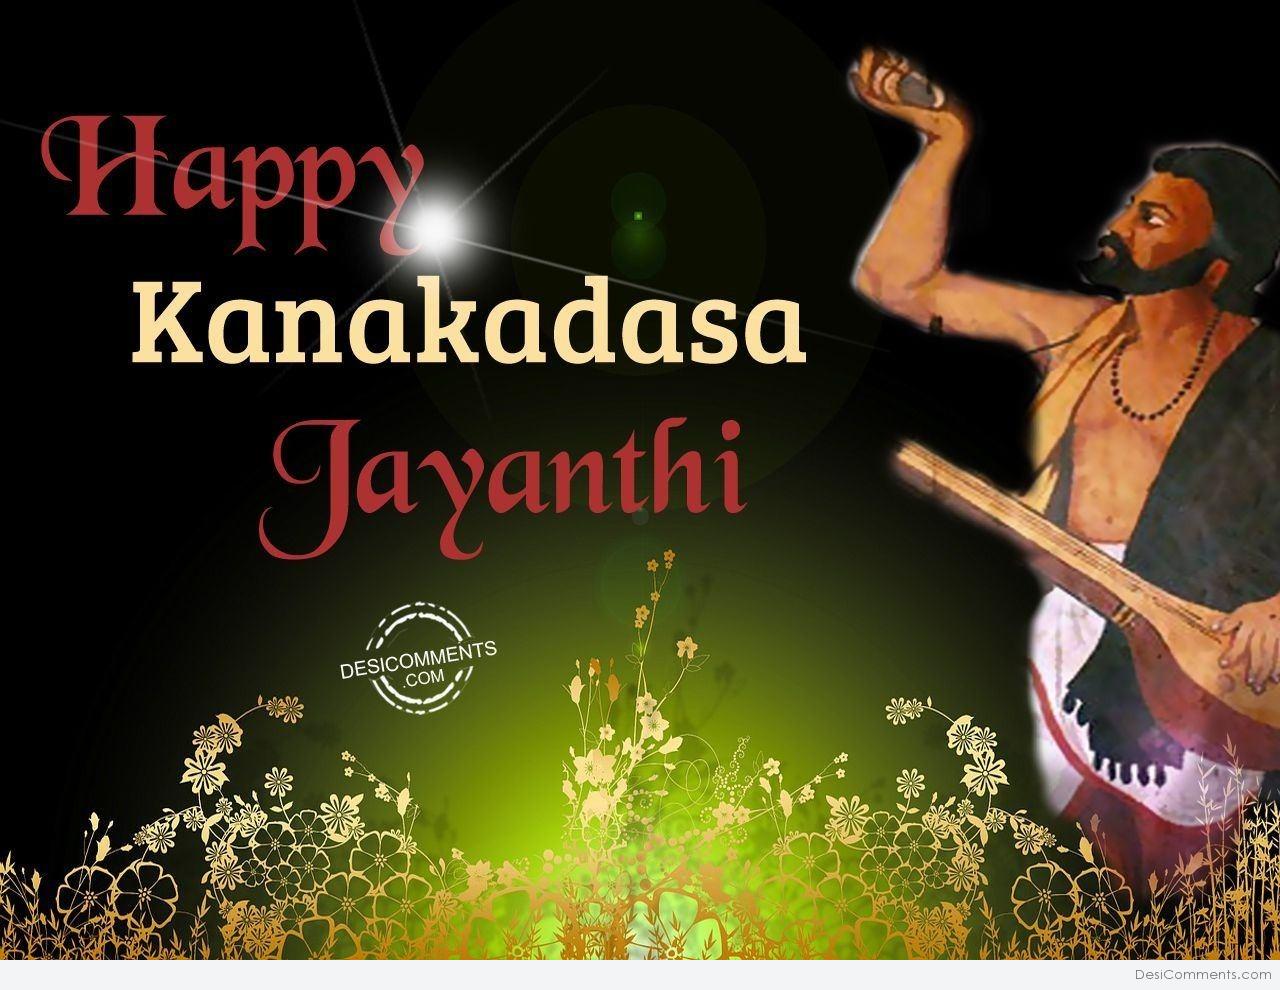 Best Wishes On Kanakadasa Jayanthi